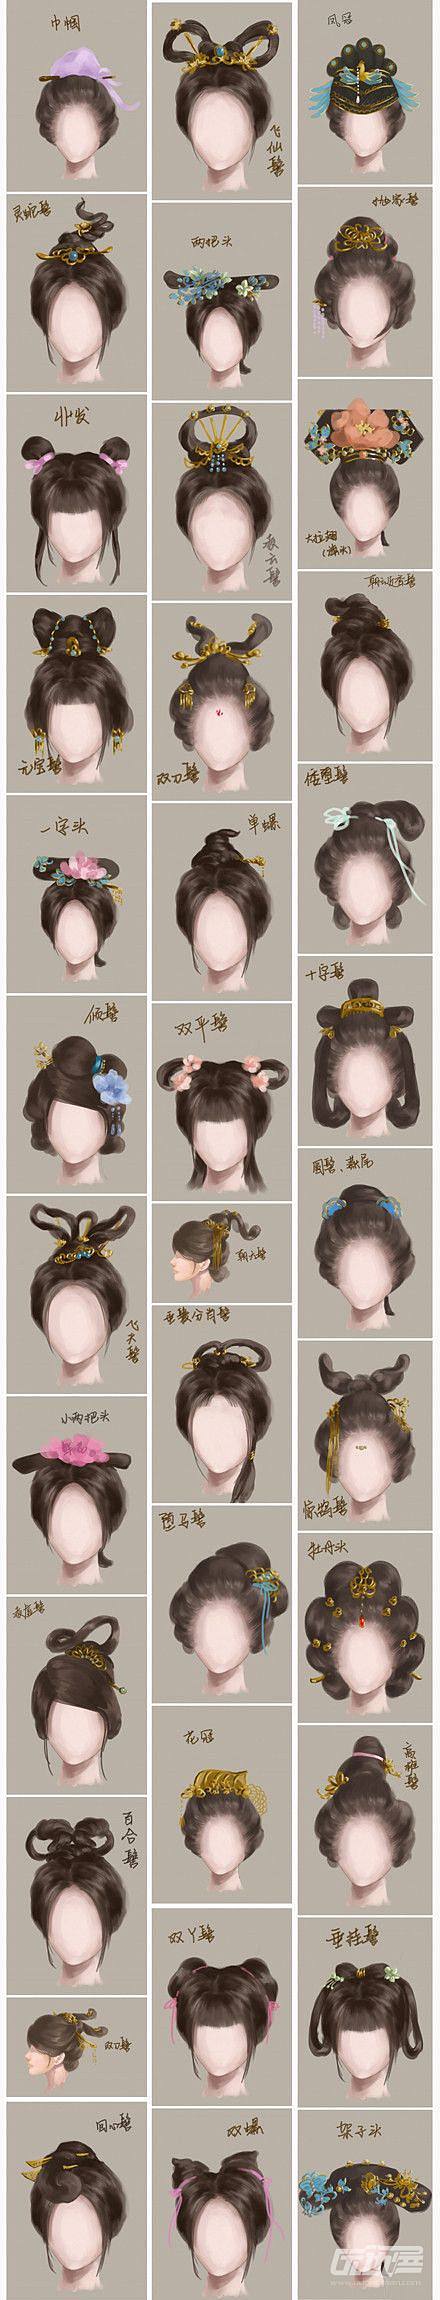 巾帼凤冠两把头中国文化无穷无尽大至戏曲小至女儿家们的发髻都有各种